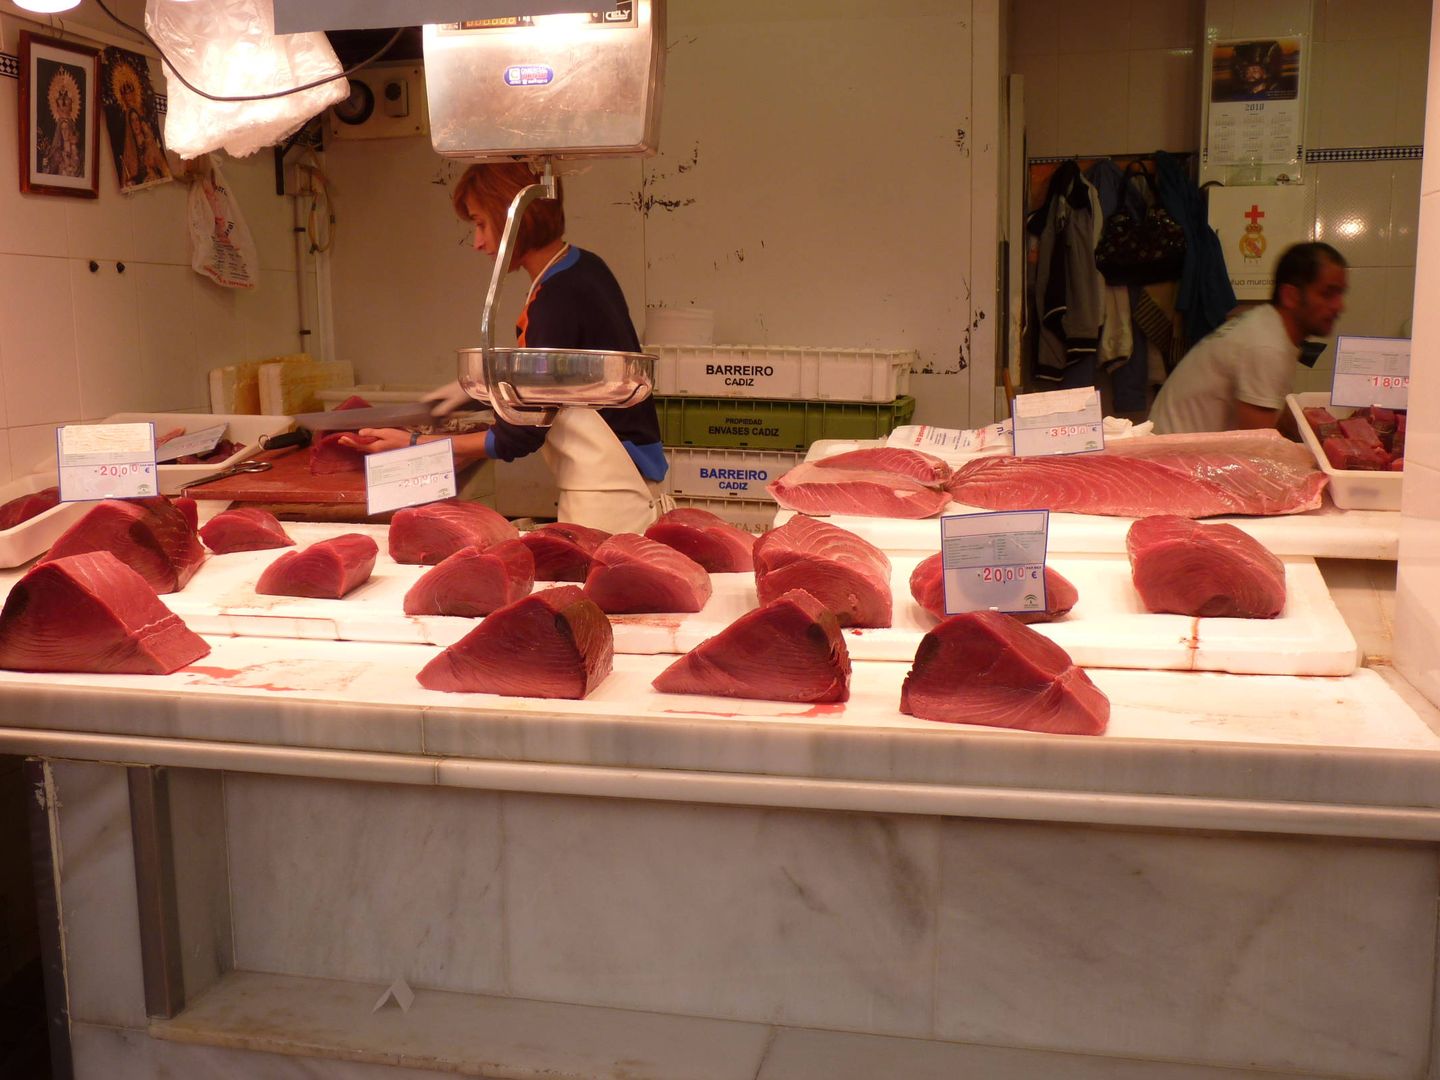 Puesto de venta de atún rojo en el mercado de abastos de Barbate (Cádiz).(M. García Rey/ICIJ)